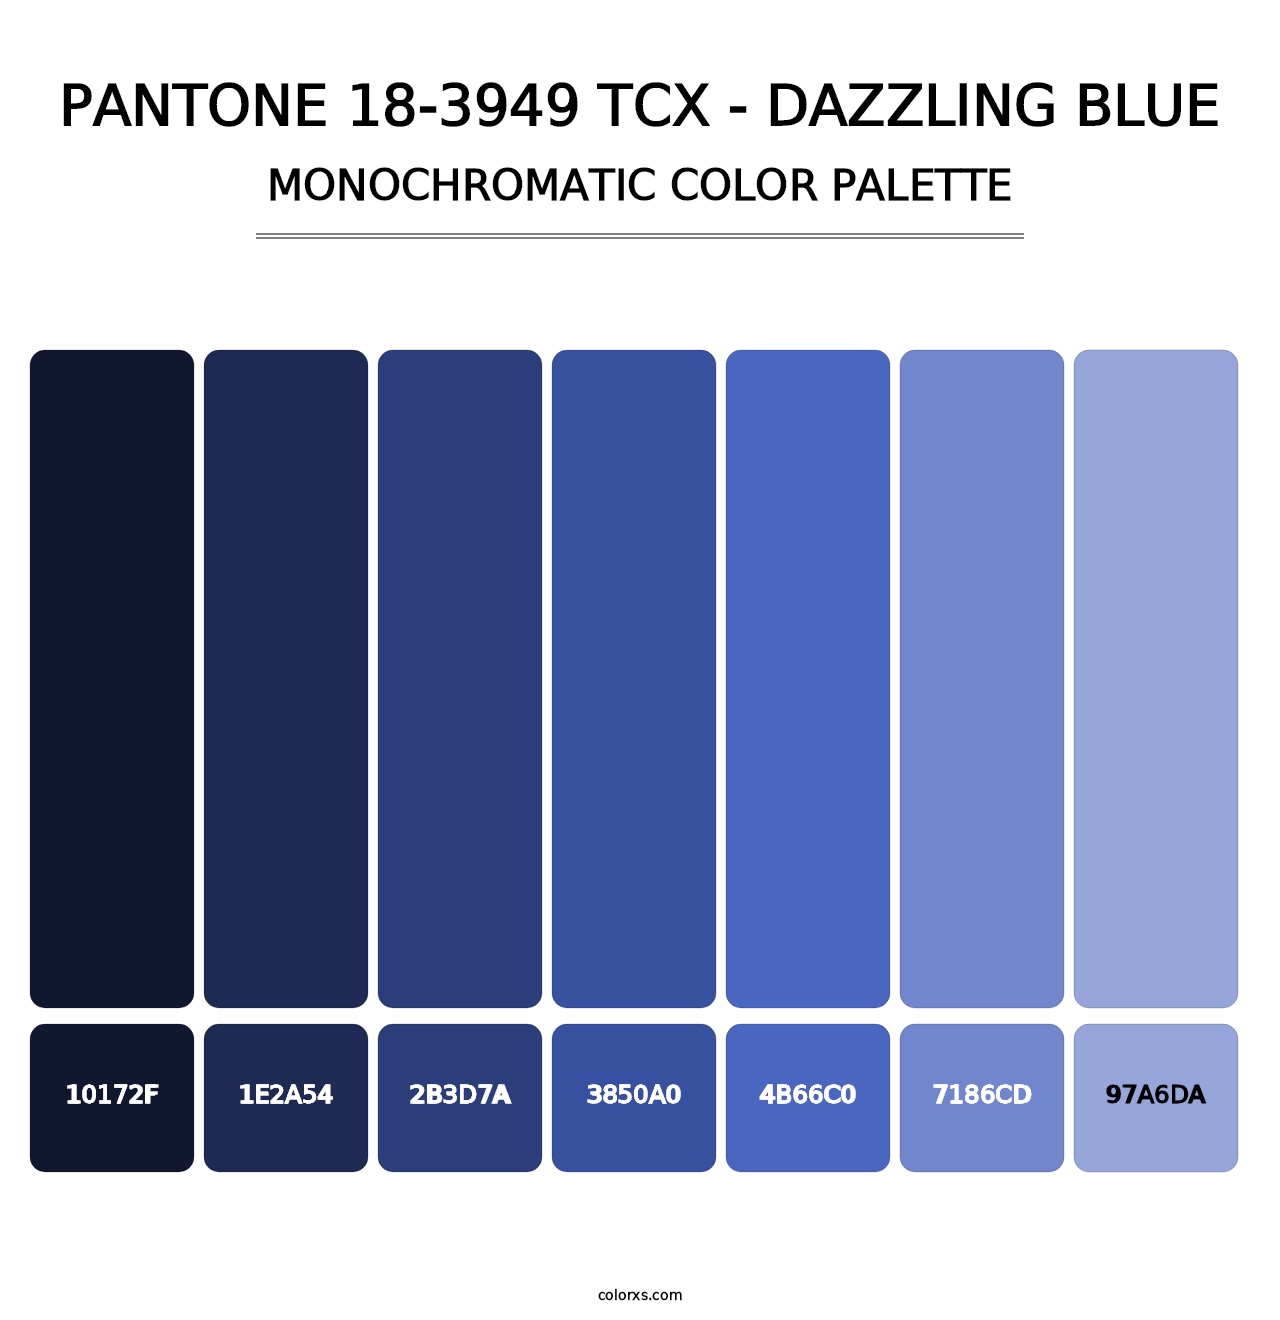 PANTONE 18-3949 TCX - Dazzling Blue - Monochromatic Color Palette